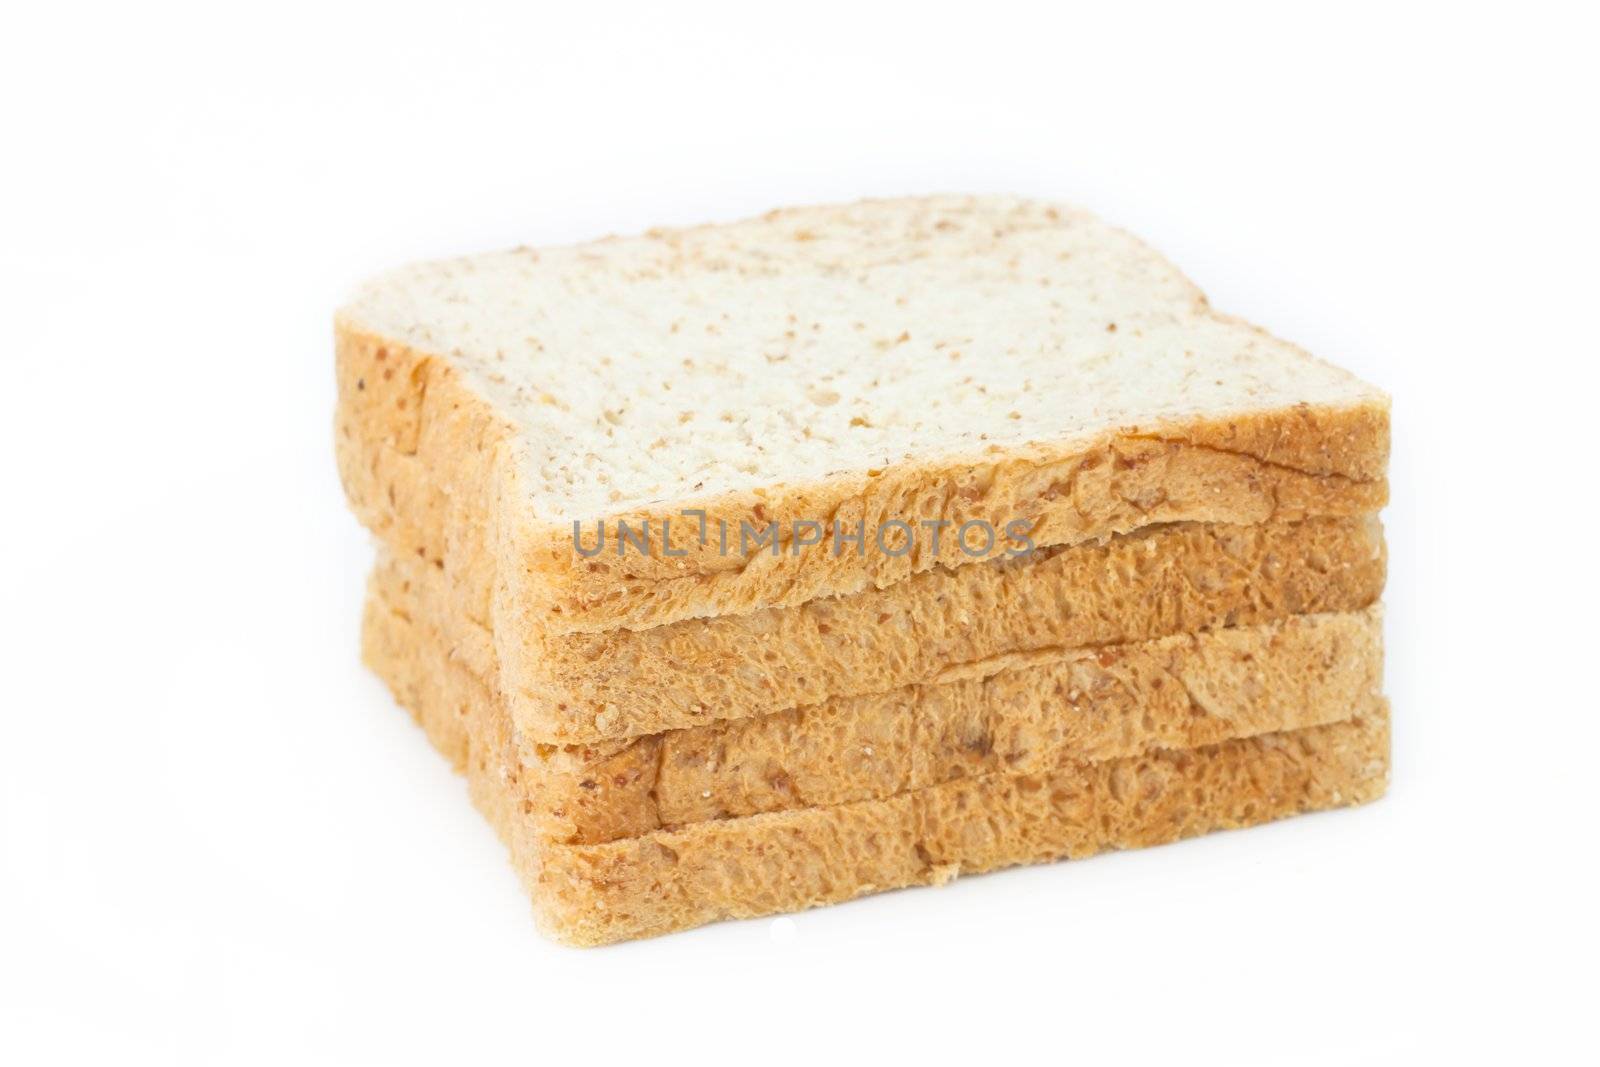 Bread by artemisphoto